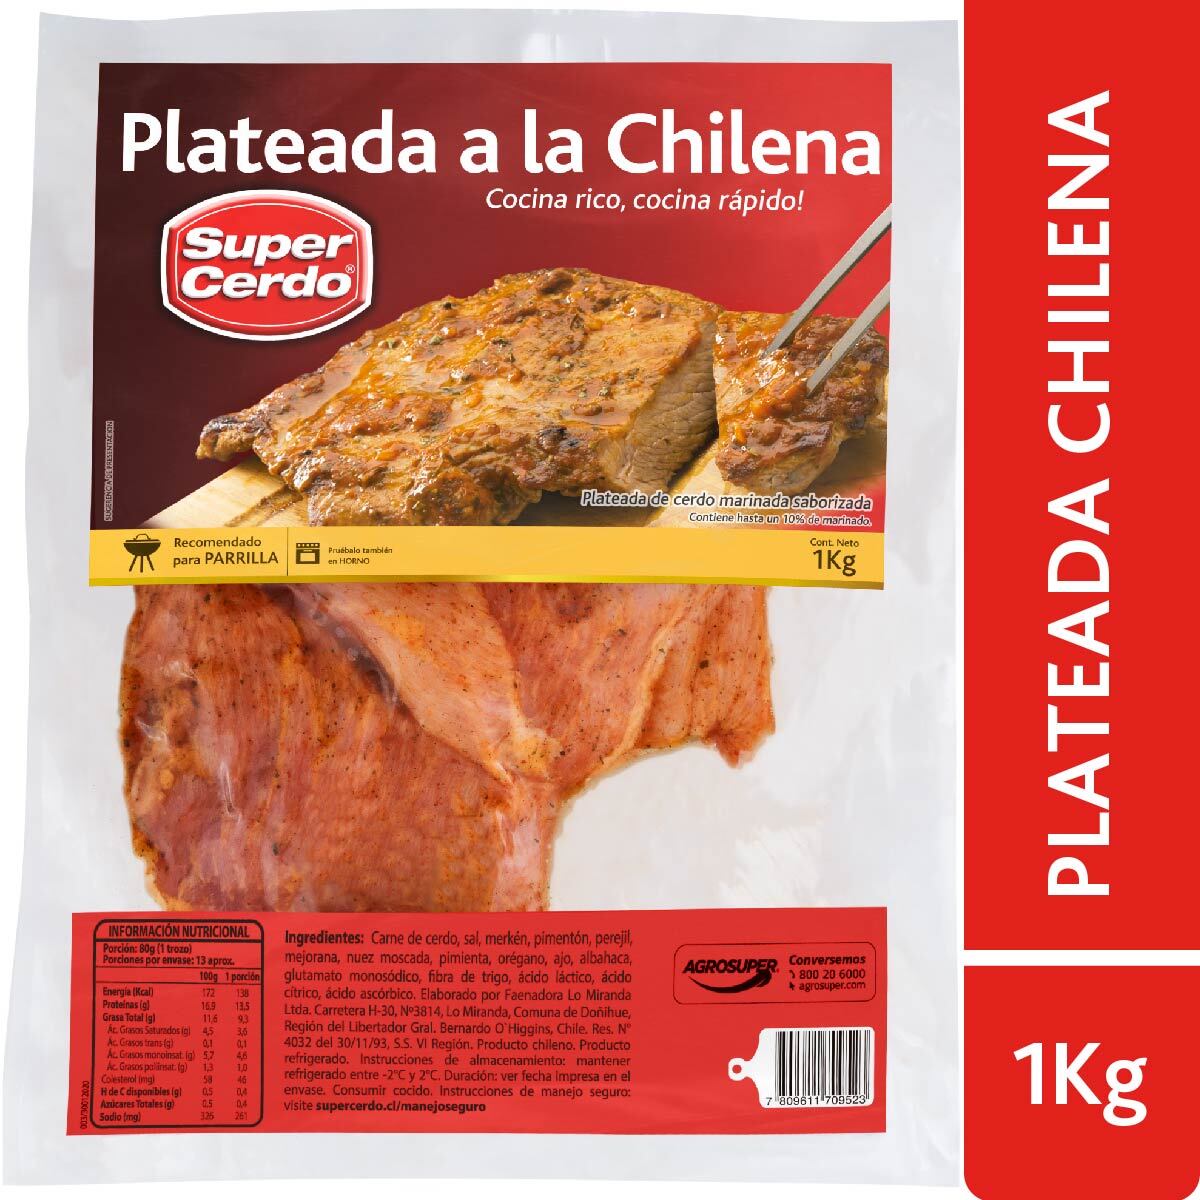 Plateada de Cerdo a la Chilena